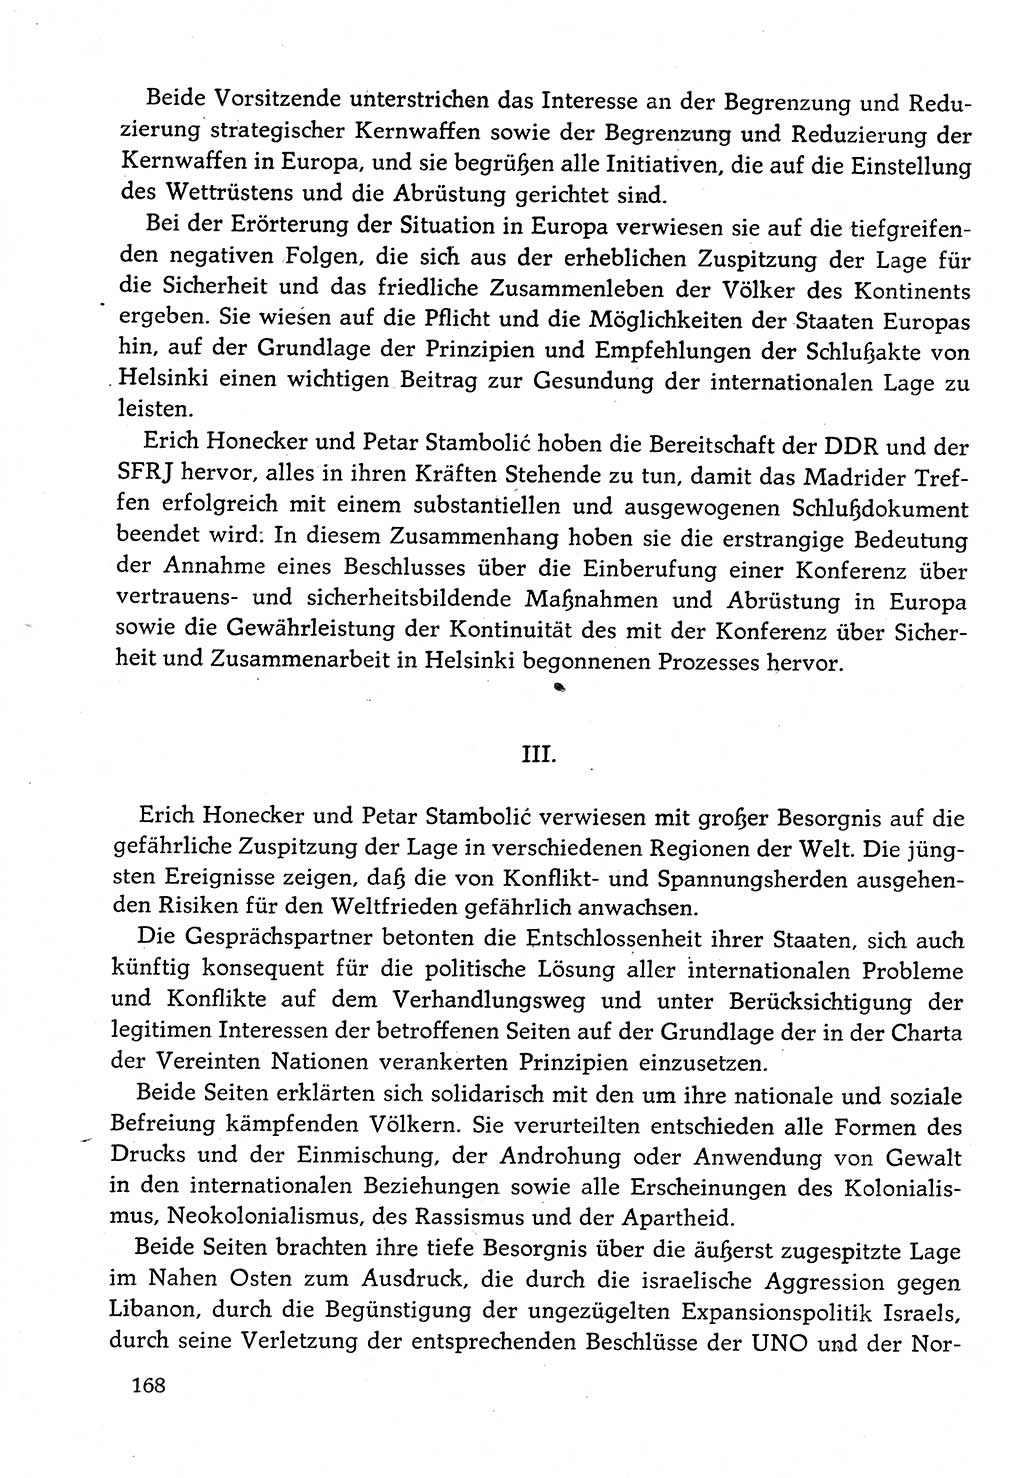 Dokumente der Sozialistischen Einheitspartei Deutschlands (SED) [Deutsche Demokratische Republik (DDR)] 1982-1983, Seite 168 (Dok. SED DDR 1982-1983, S. 168)